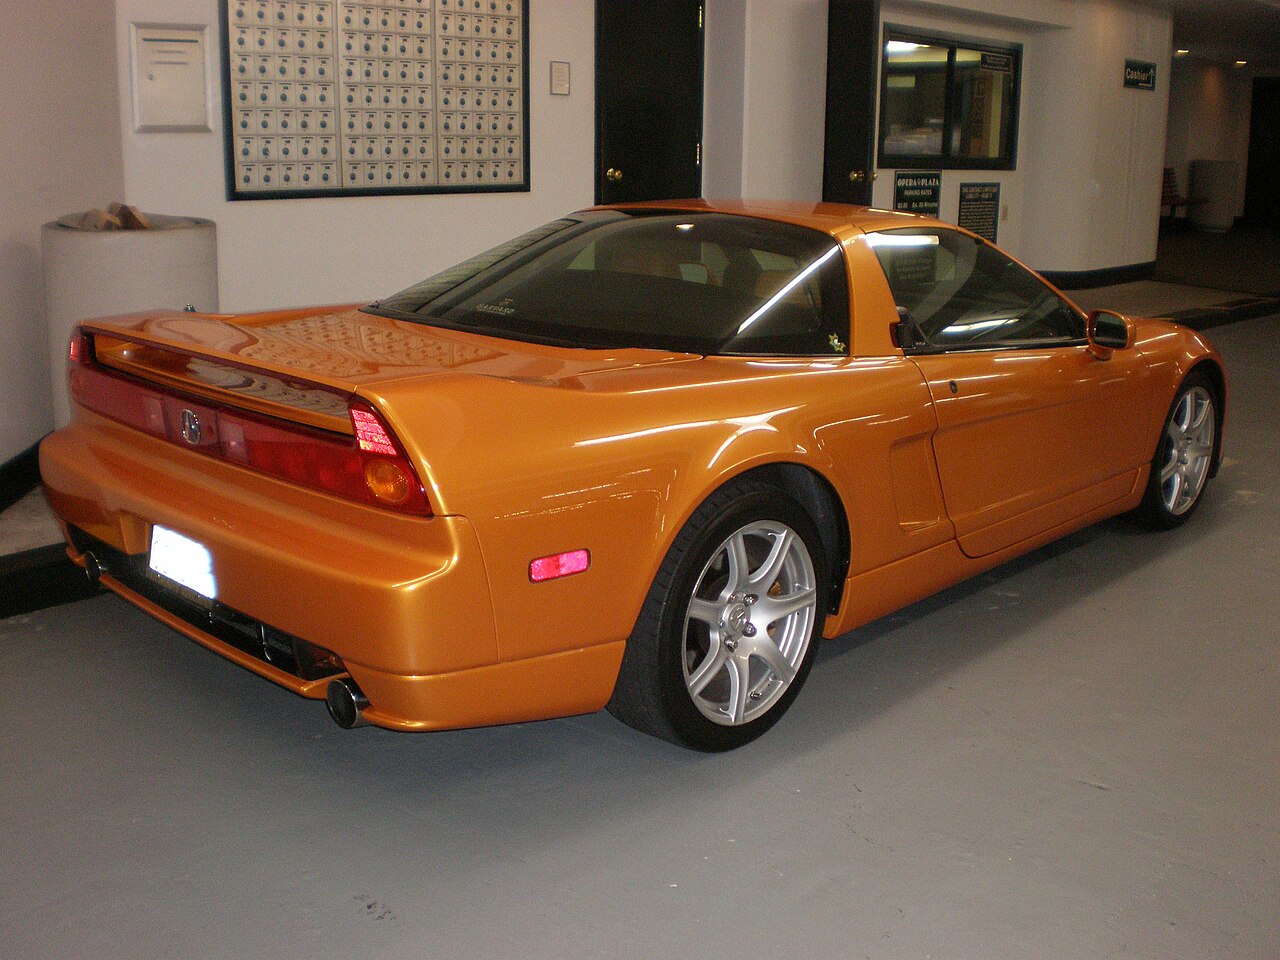 Image of Orange Acura NSX right side